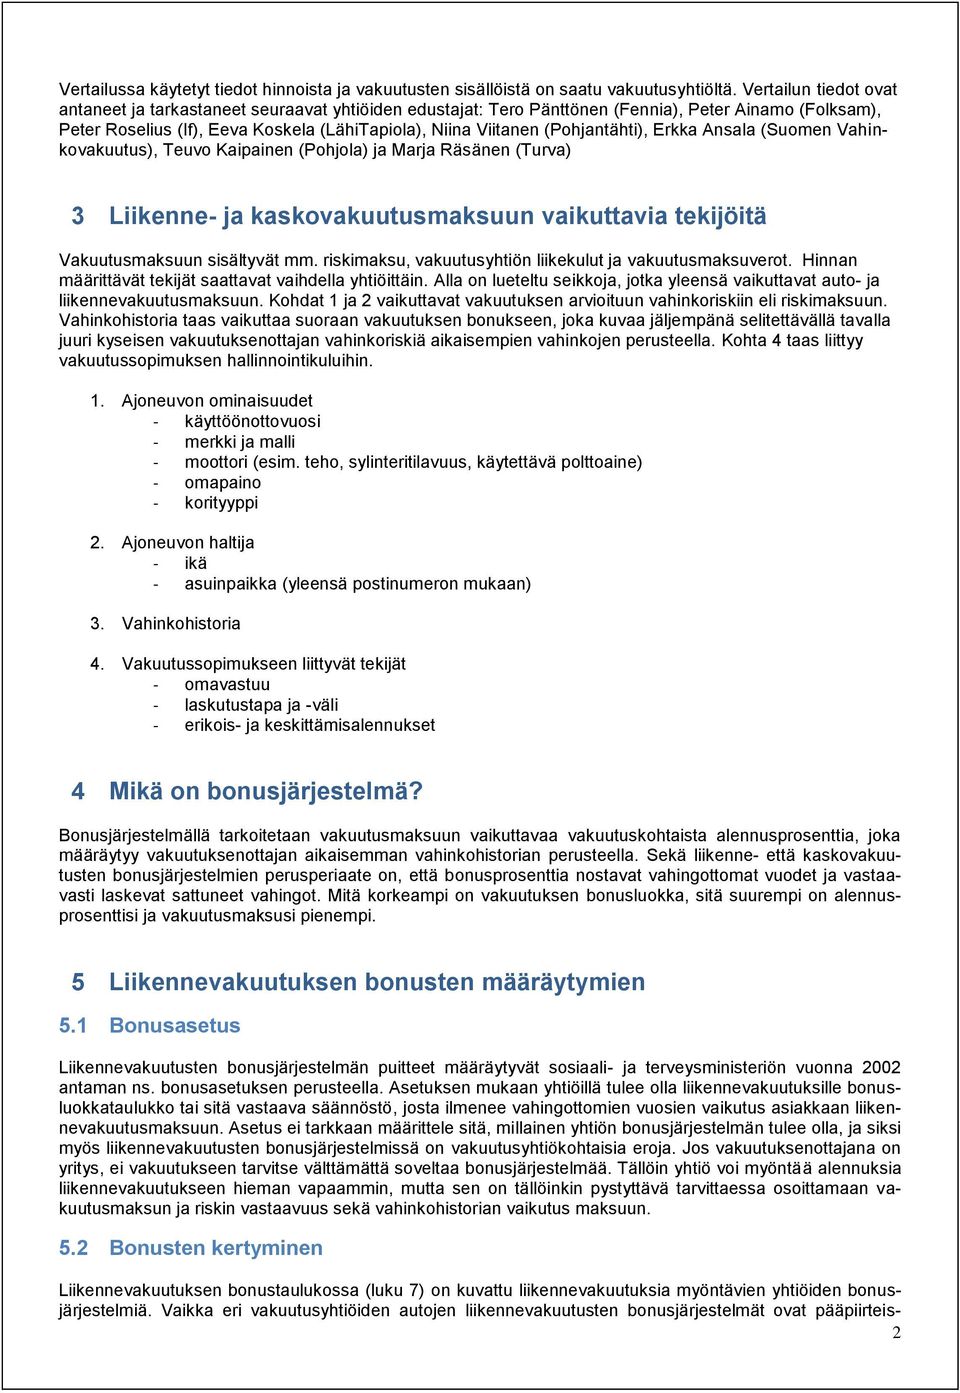 (Pohjantähti), Erkka Ansala (Suomen Vahinkovakuutus), Teuvo Kaipainen (Pohjola) ja Marja Räsänen (Turva) 3 Liikenne- ja kaskovakuutusmaksuun vaikuttavia tekijöitä Vakuutusmaksuun sisältyvät mm.